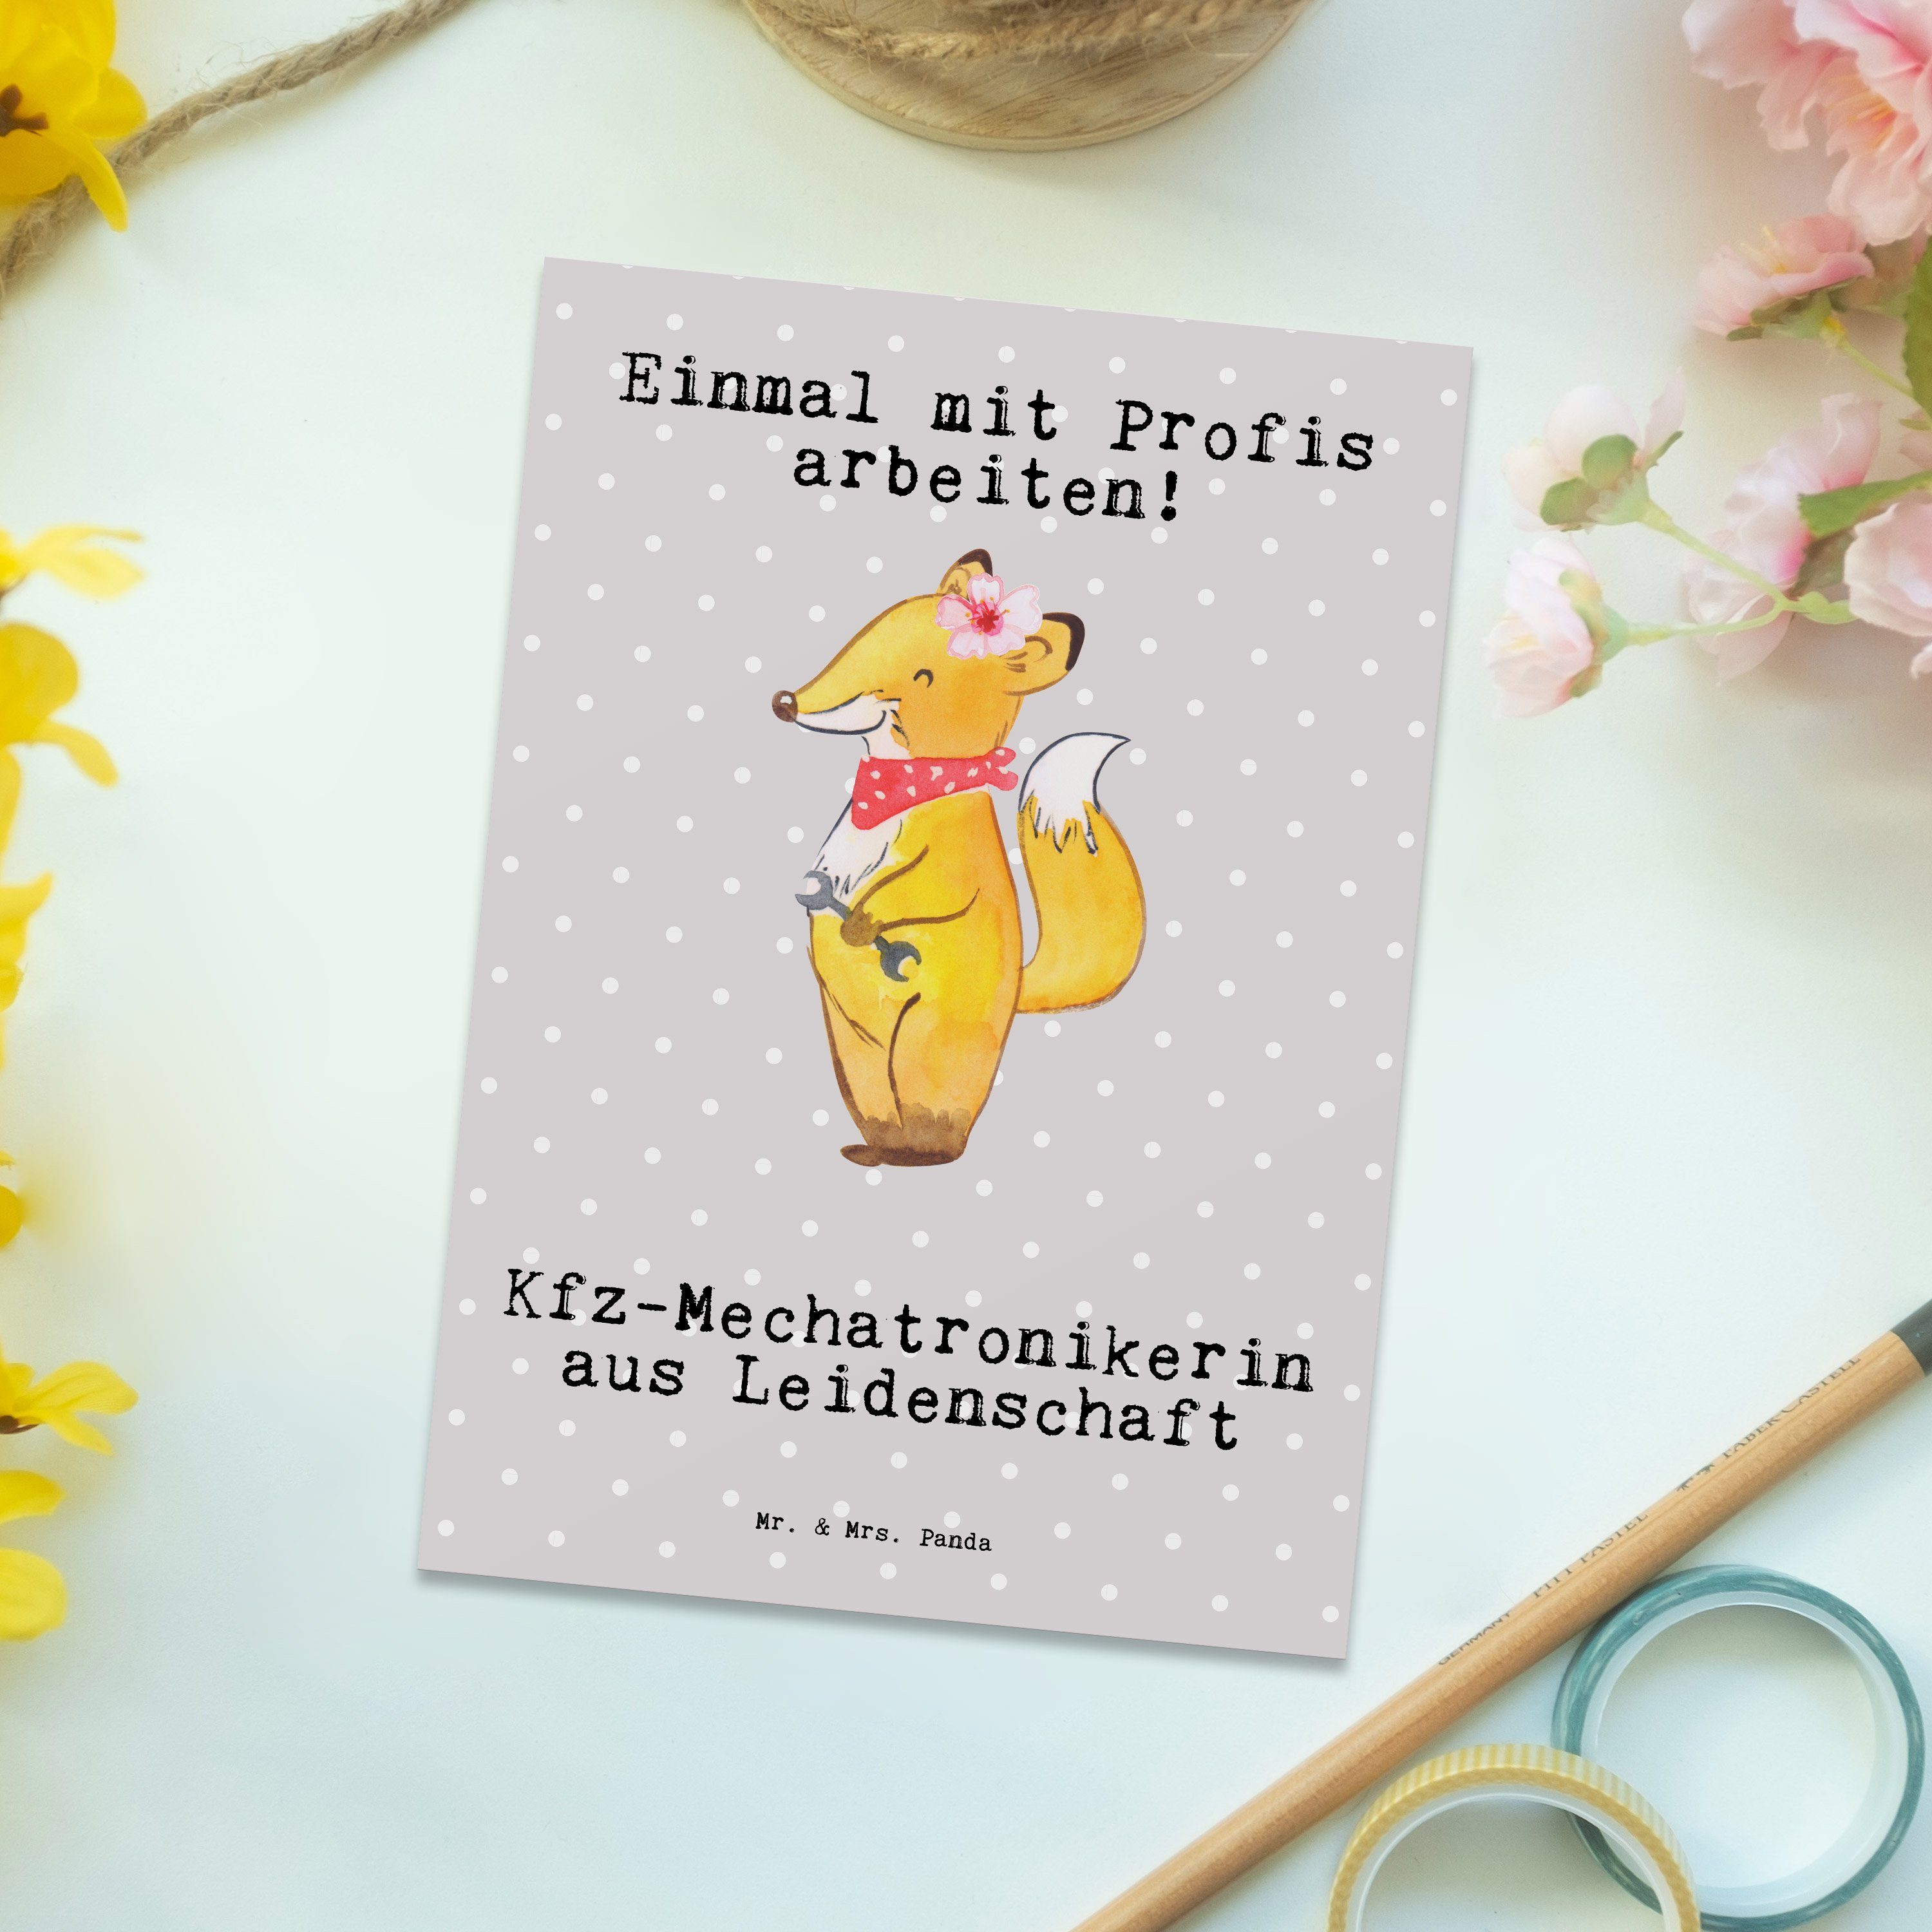 Mr. & Mrs. Postkarte Kfz-Mechatronikerin - Pastell - aus Gebur Grau Leidenschaft Geschenk, Panda